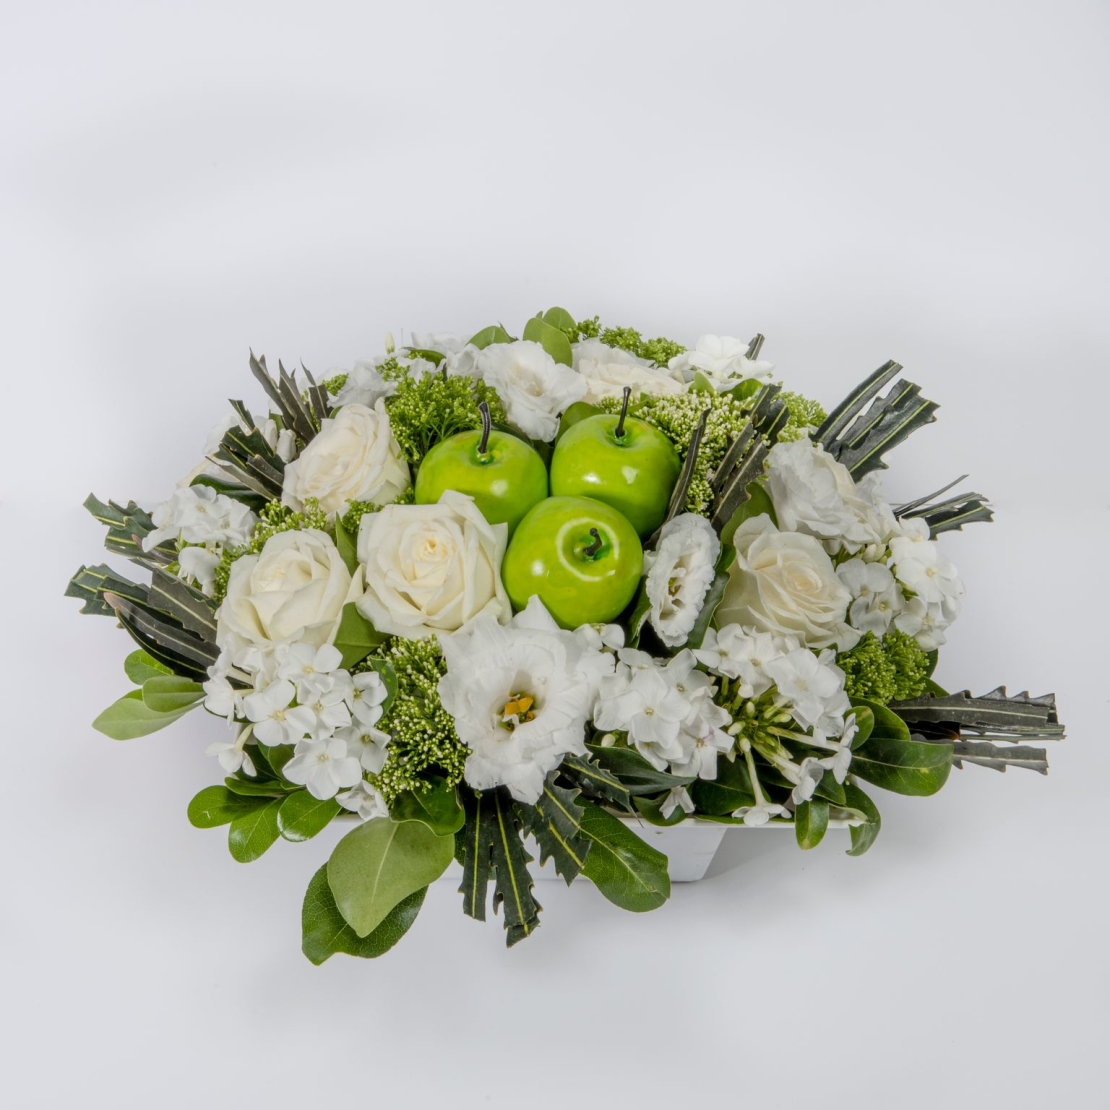 Festive White Flower Arrangement